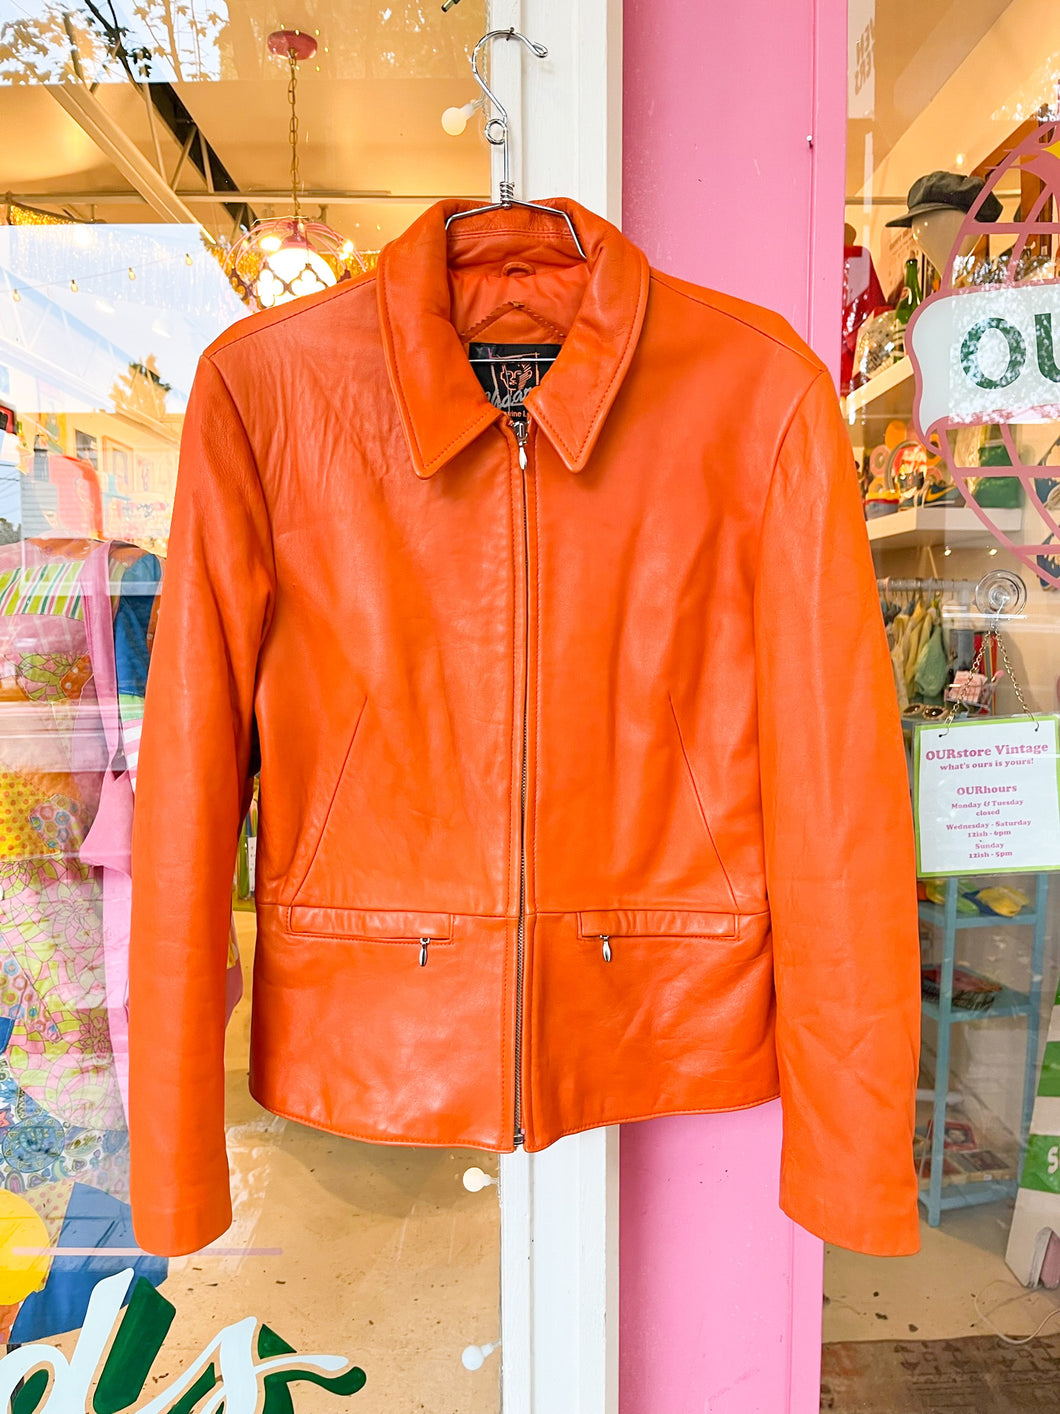 90s butter soft orange leather jacket